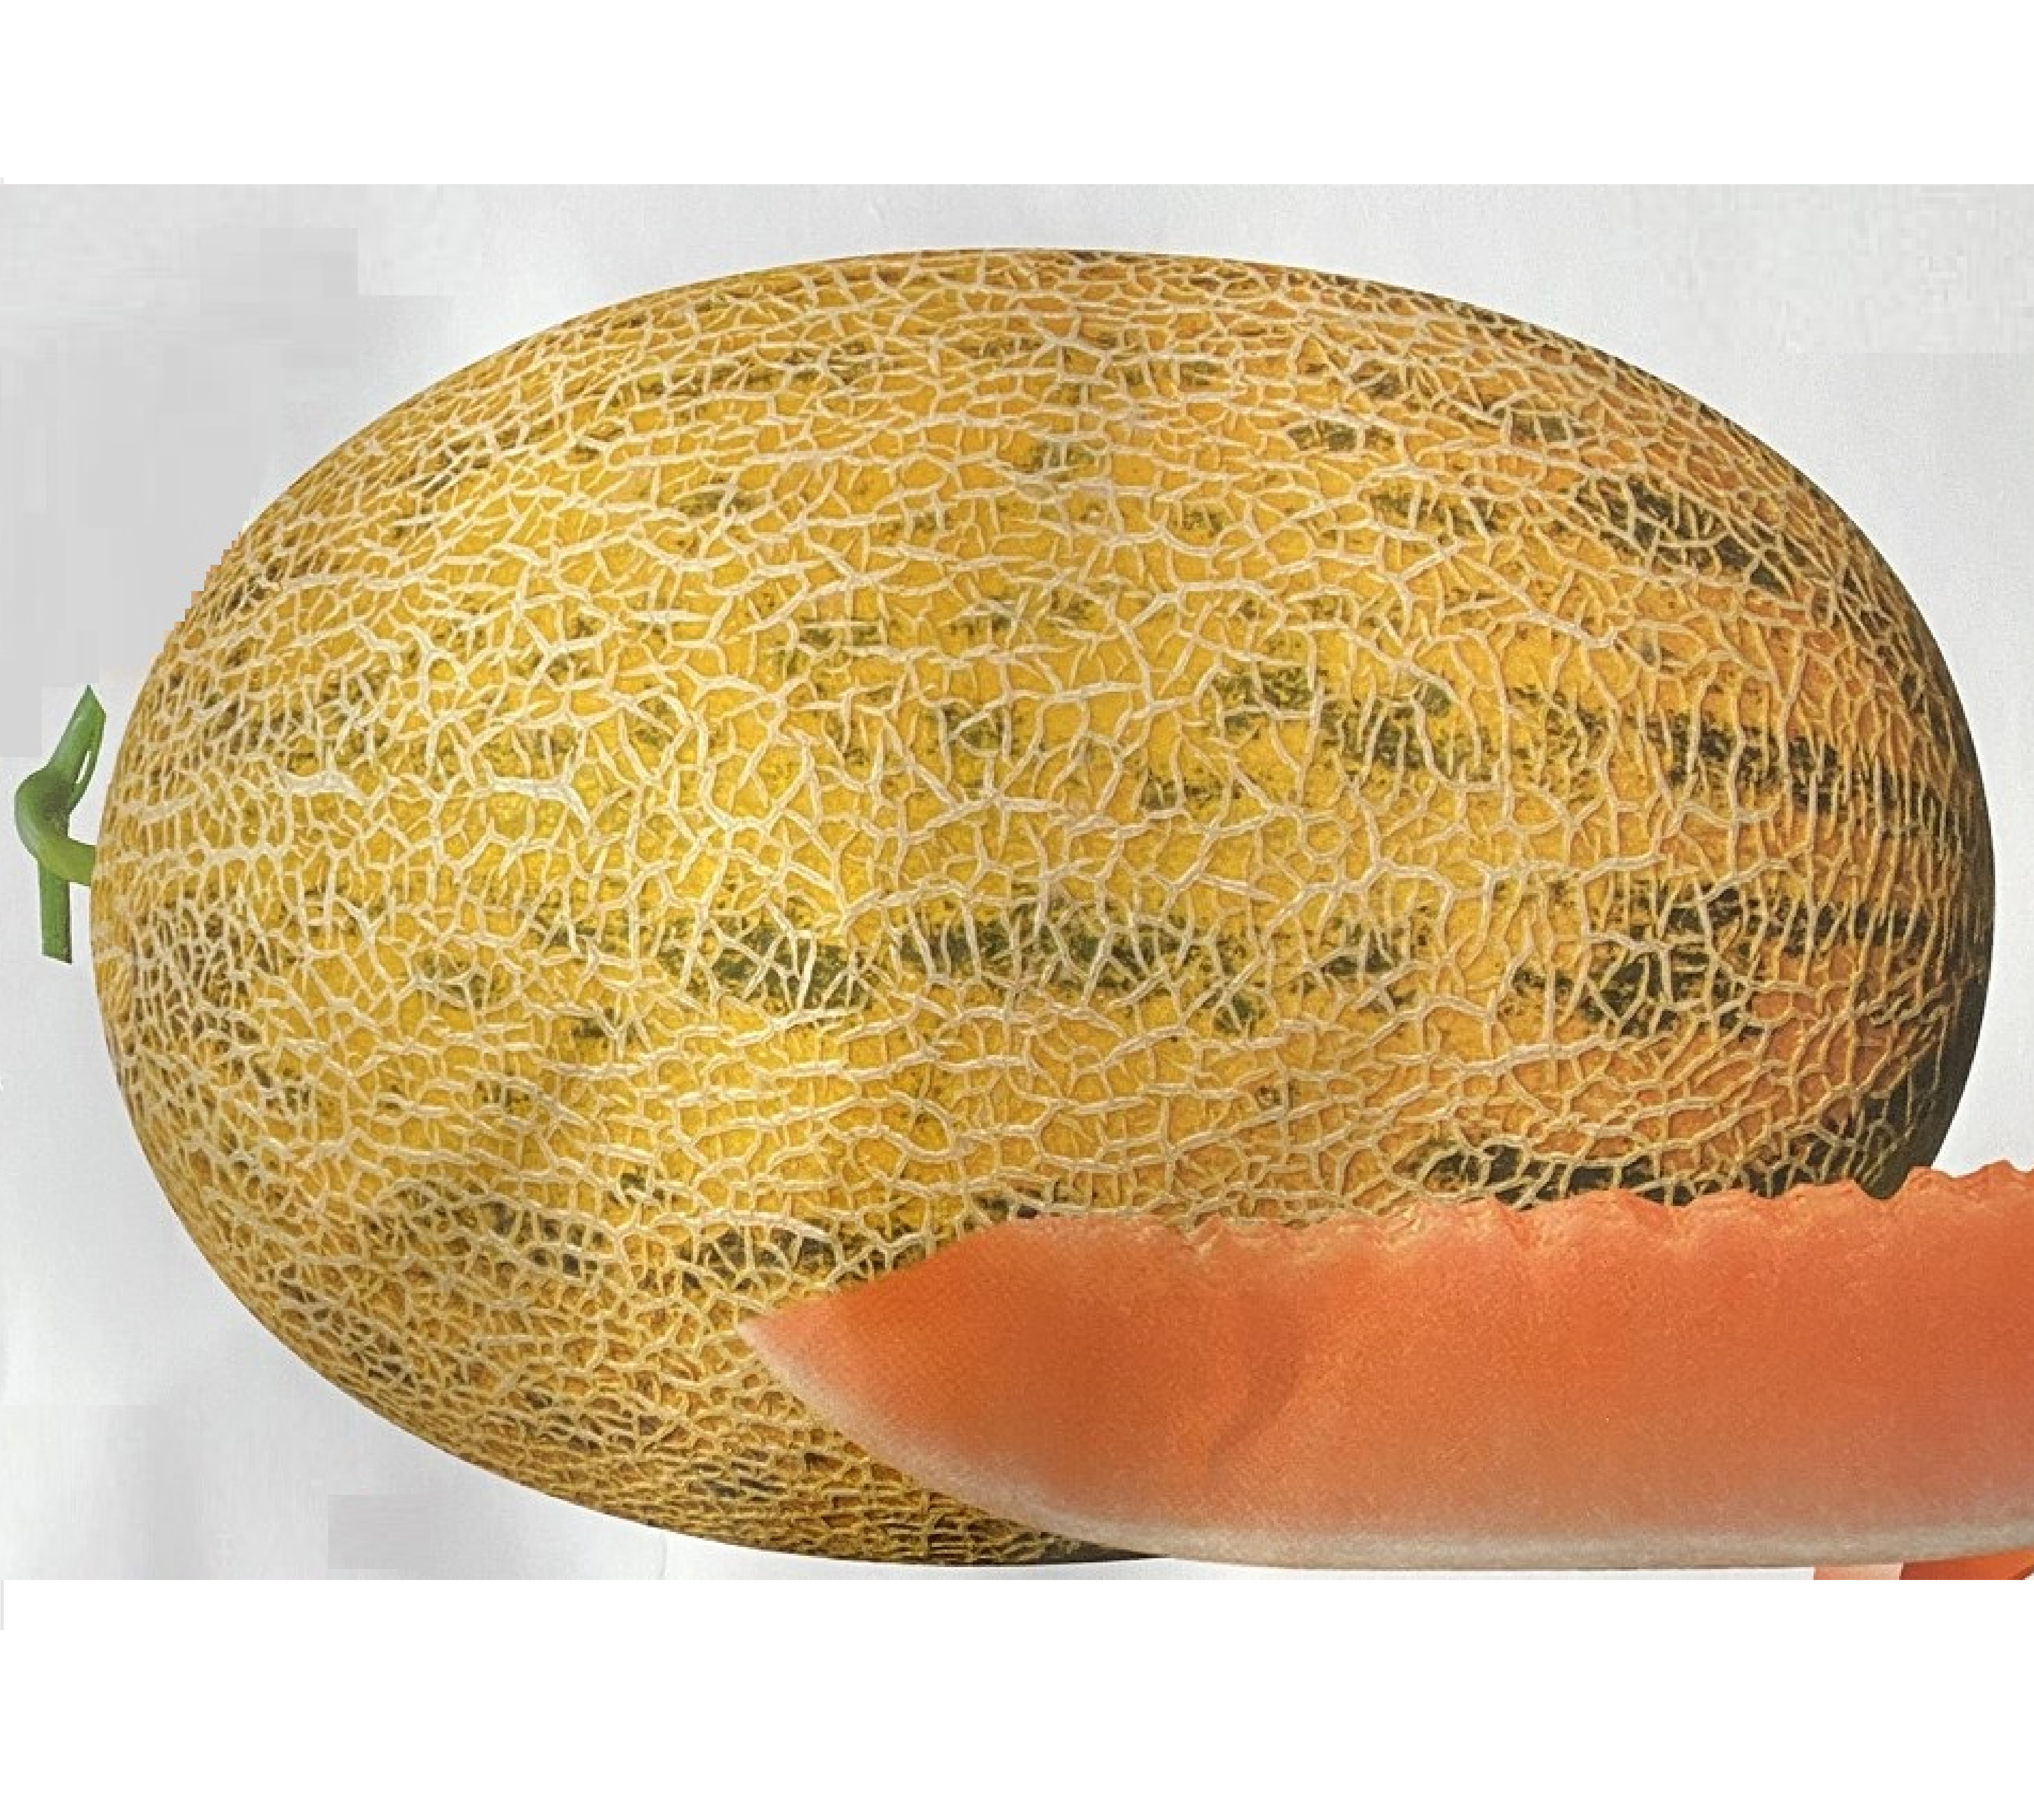 Héich Qualitéit Melon Somen fir Grousshandel